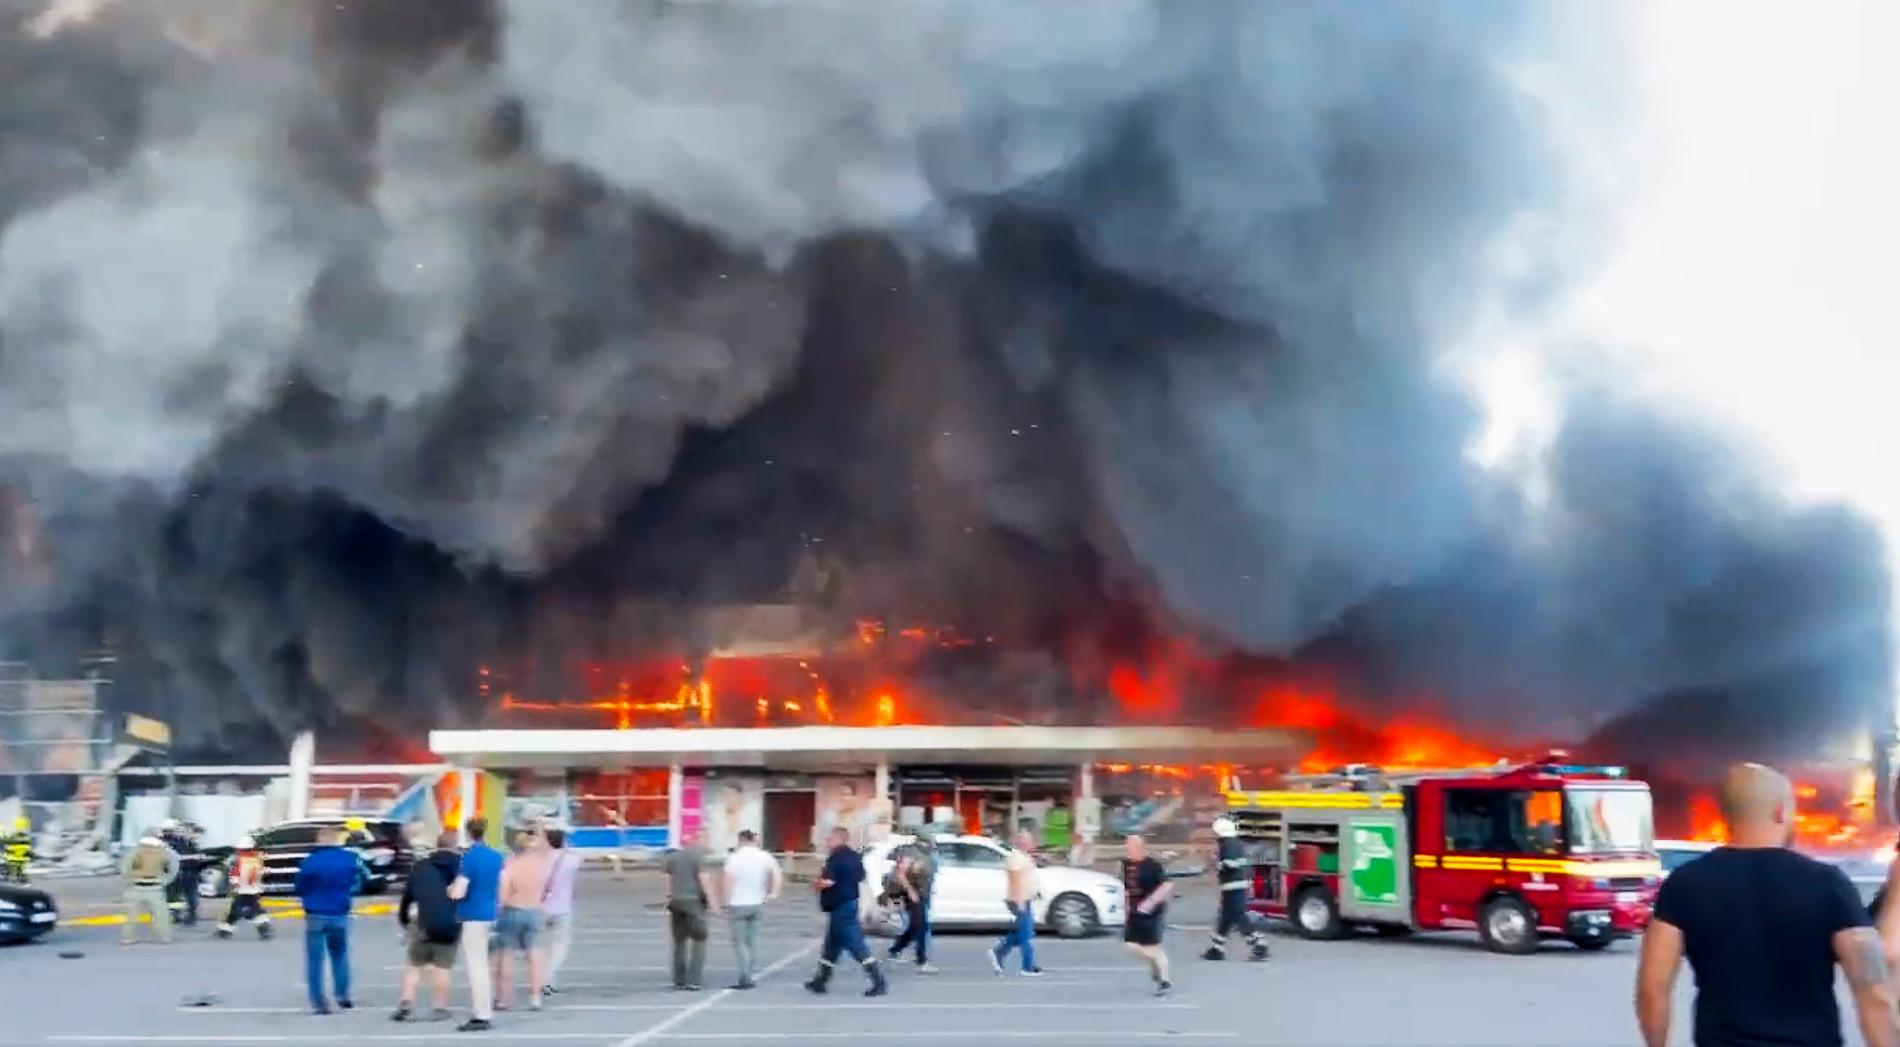 Sale il bilancio delle vittime dopo l’attacco al centro commerciale in Ucraina – VG